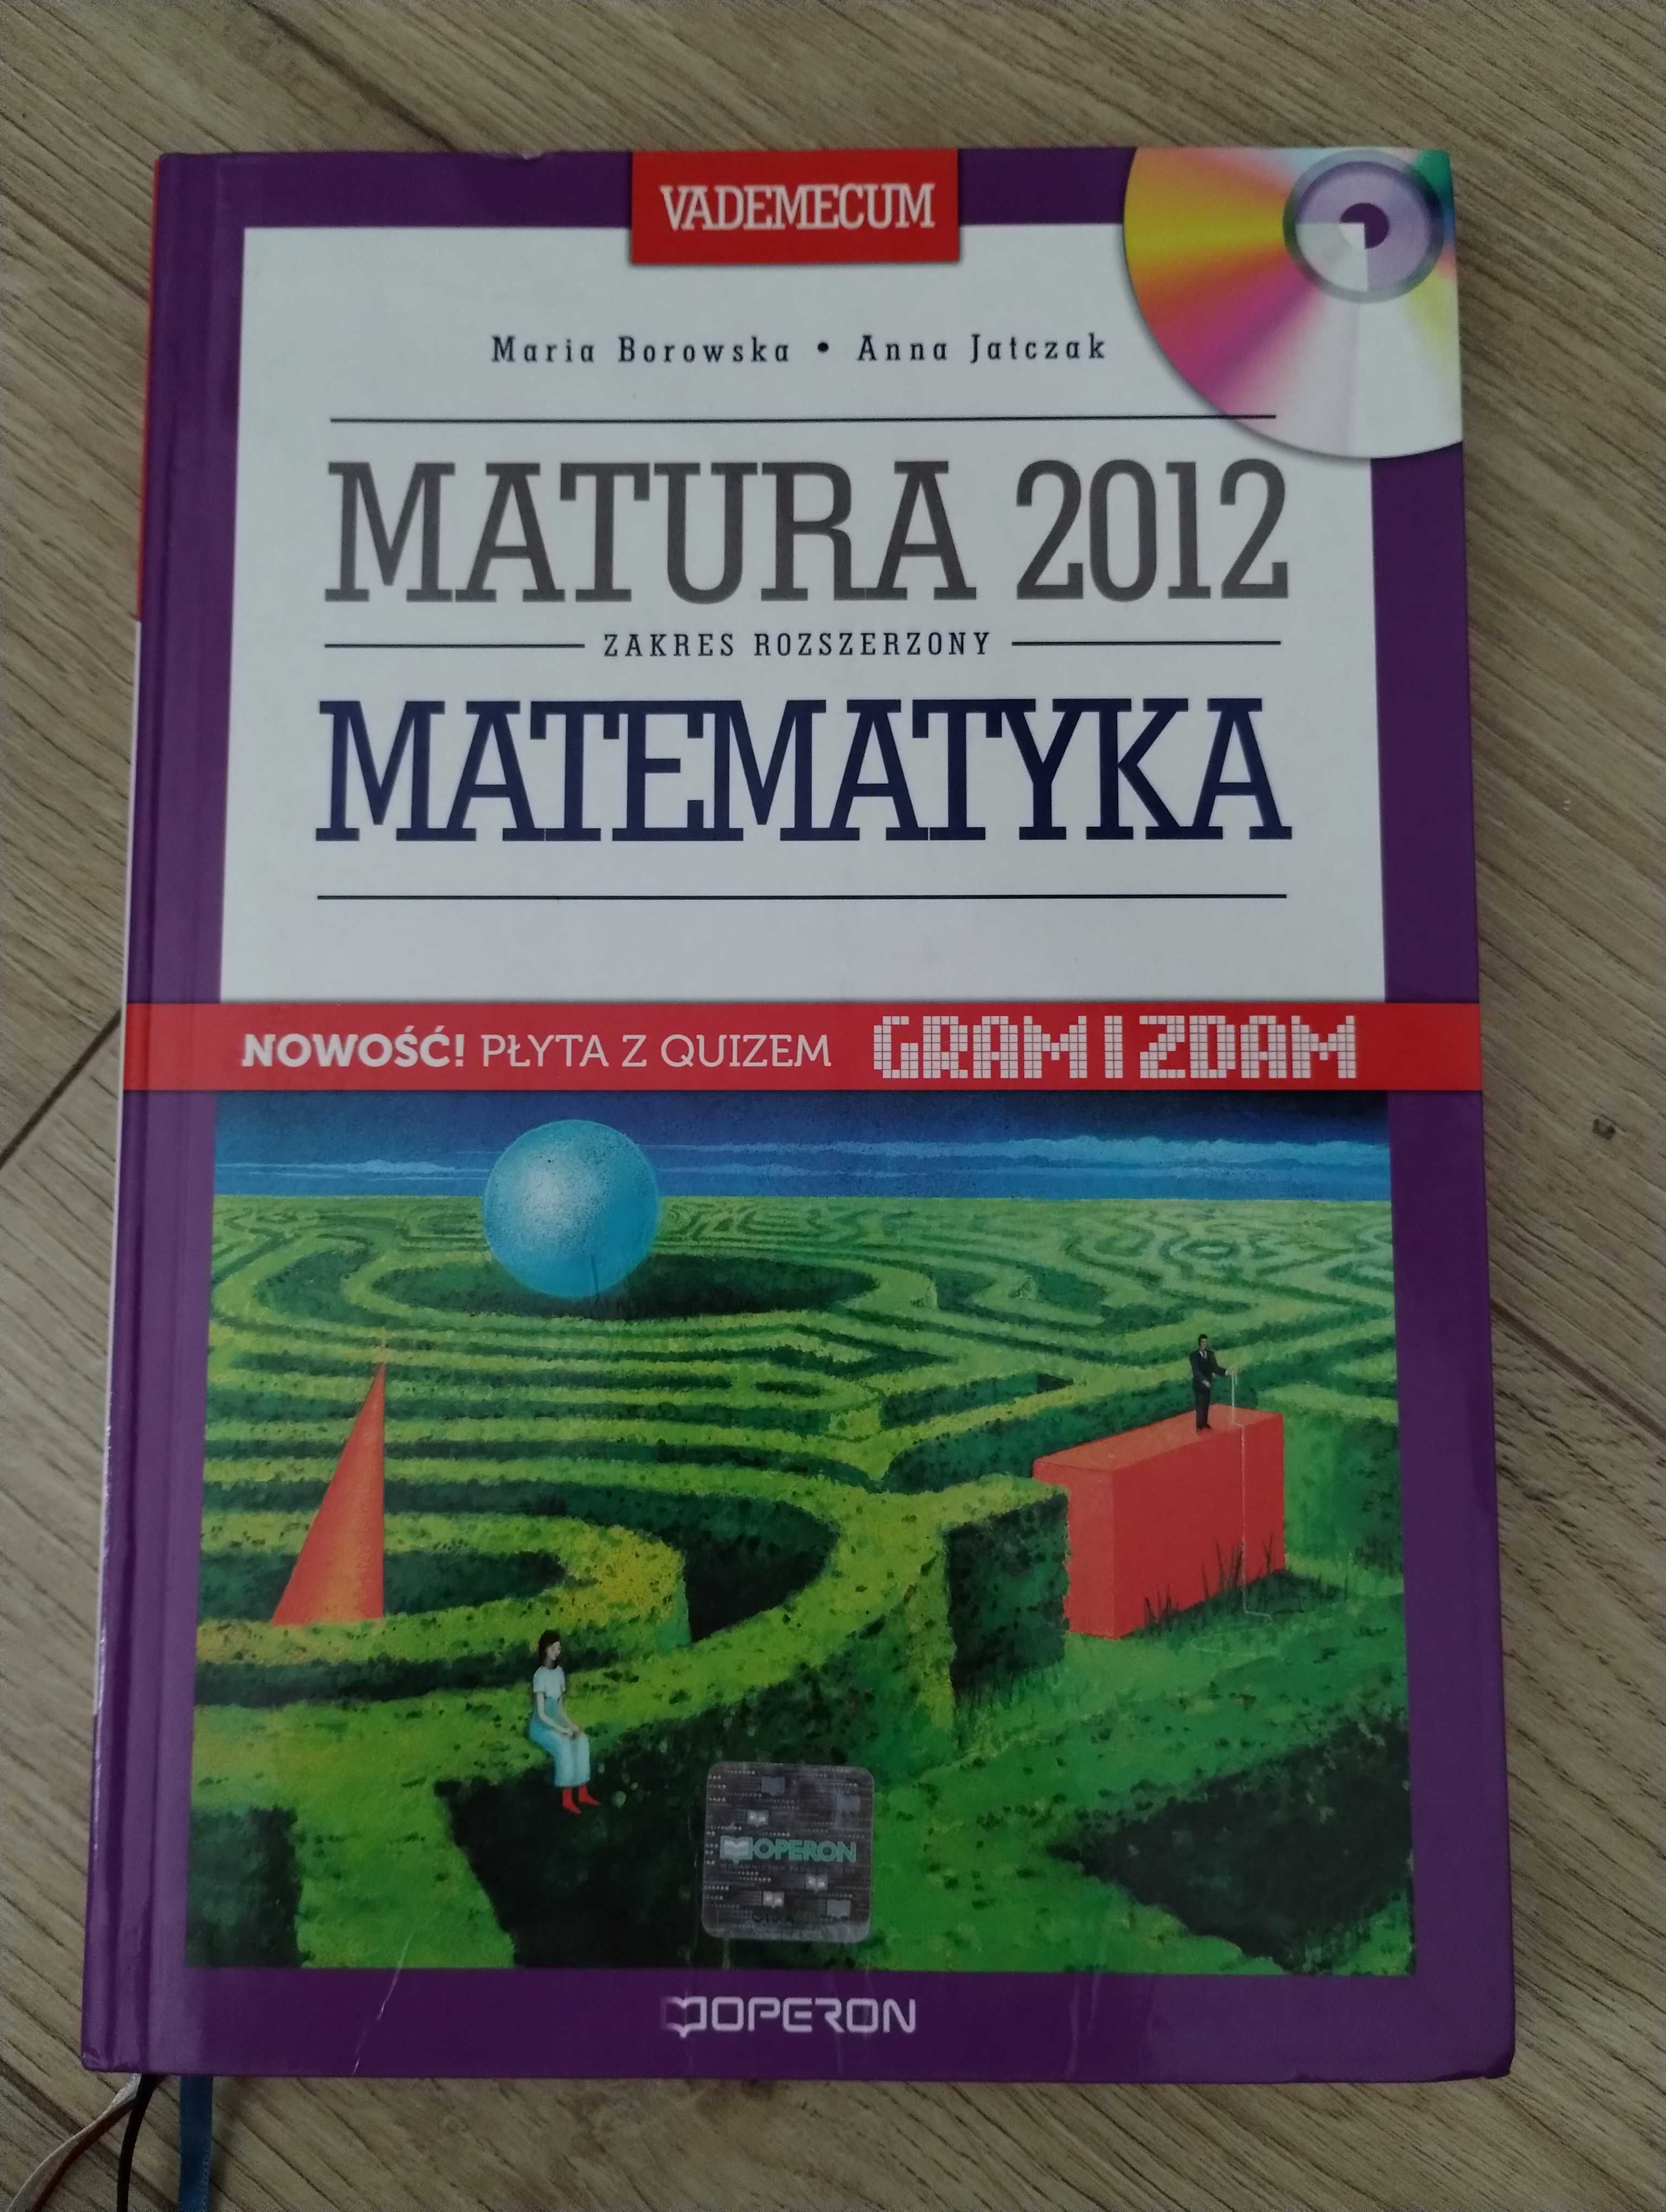 Matura 2012 zakres rozszerzony matematyka vademecum